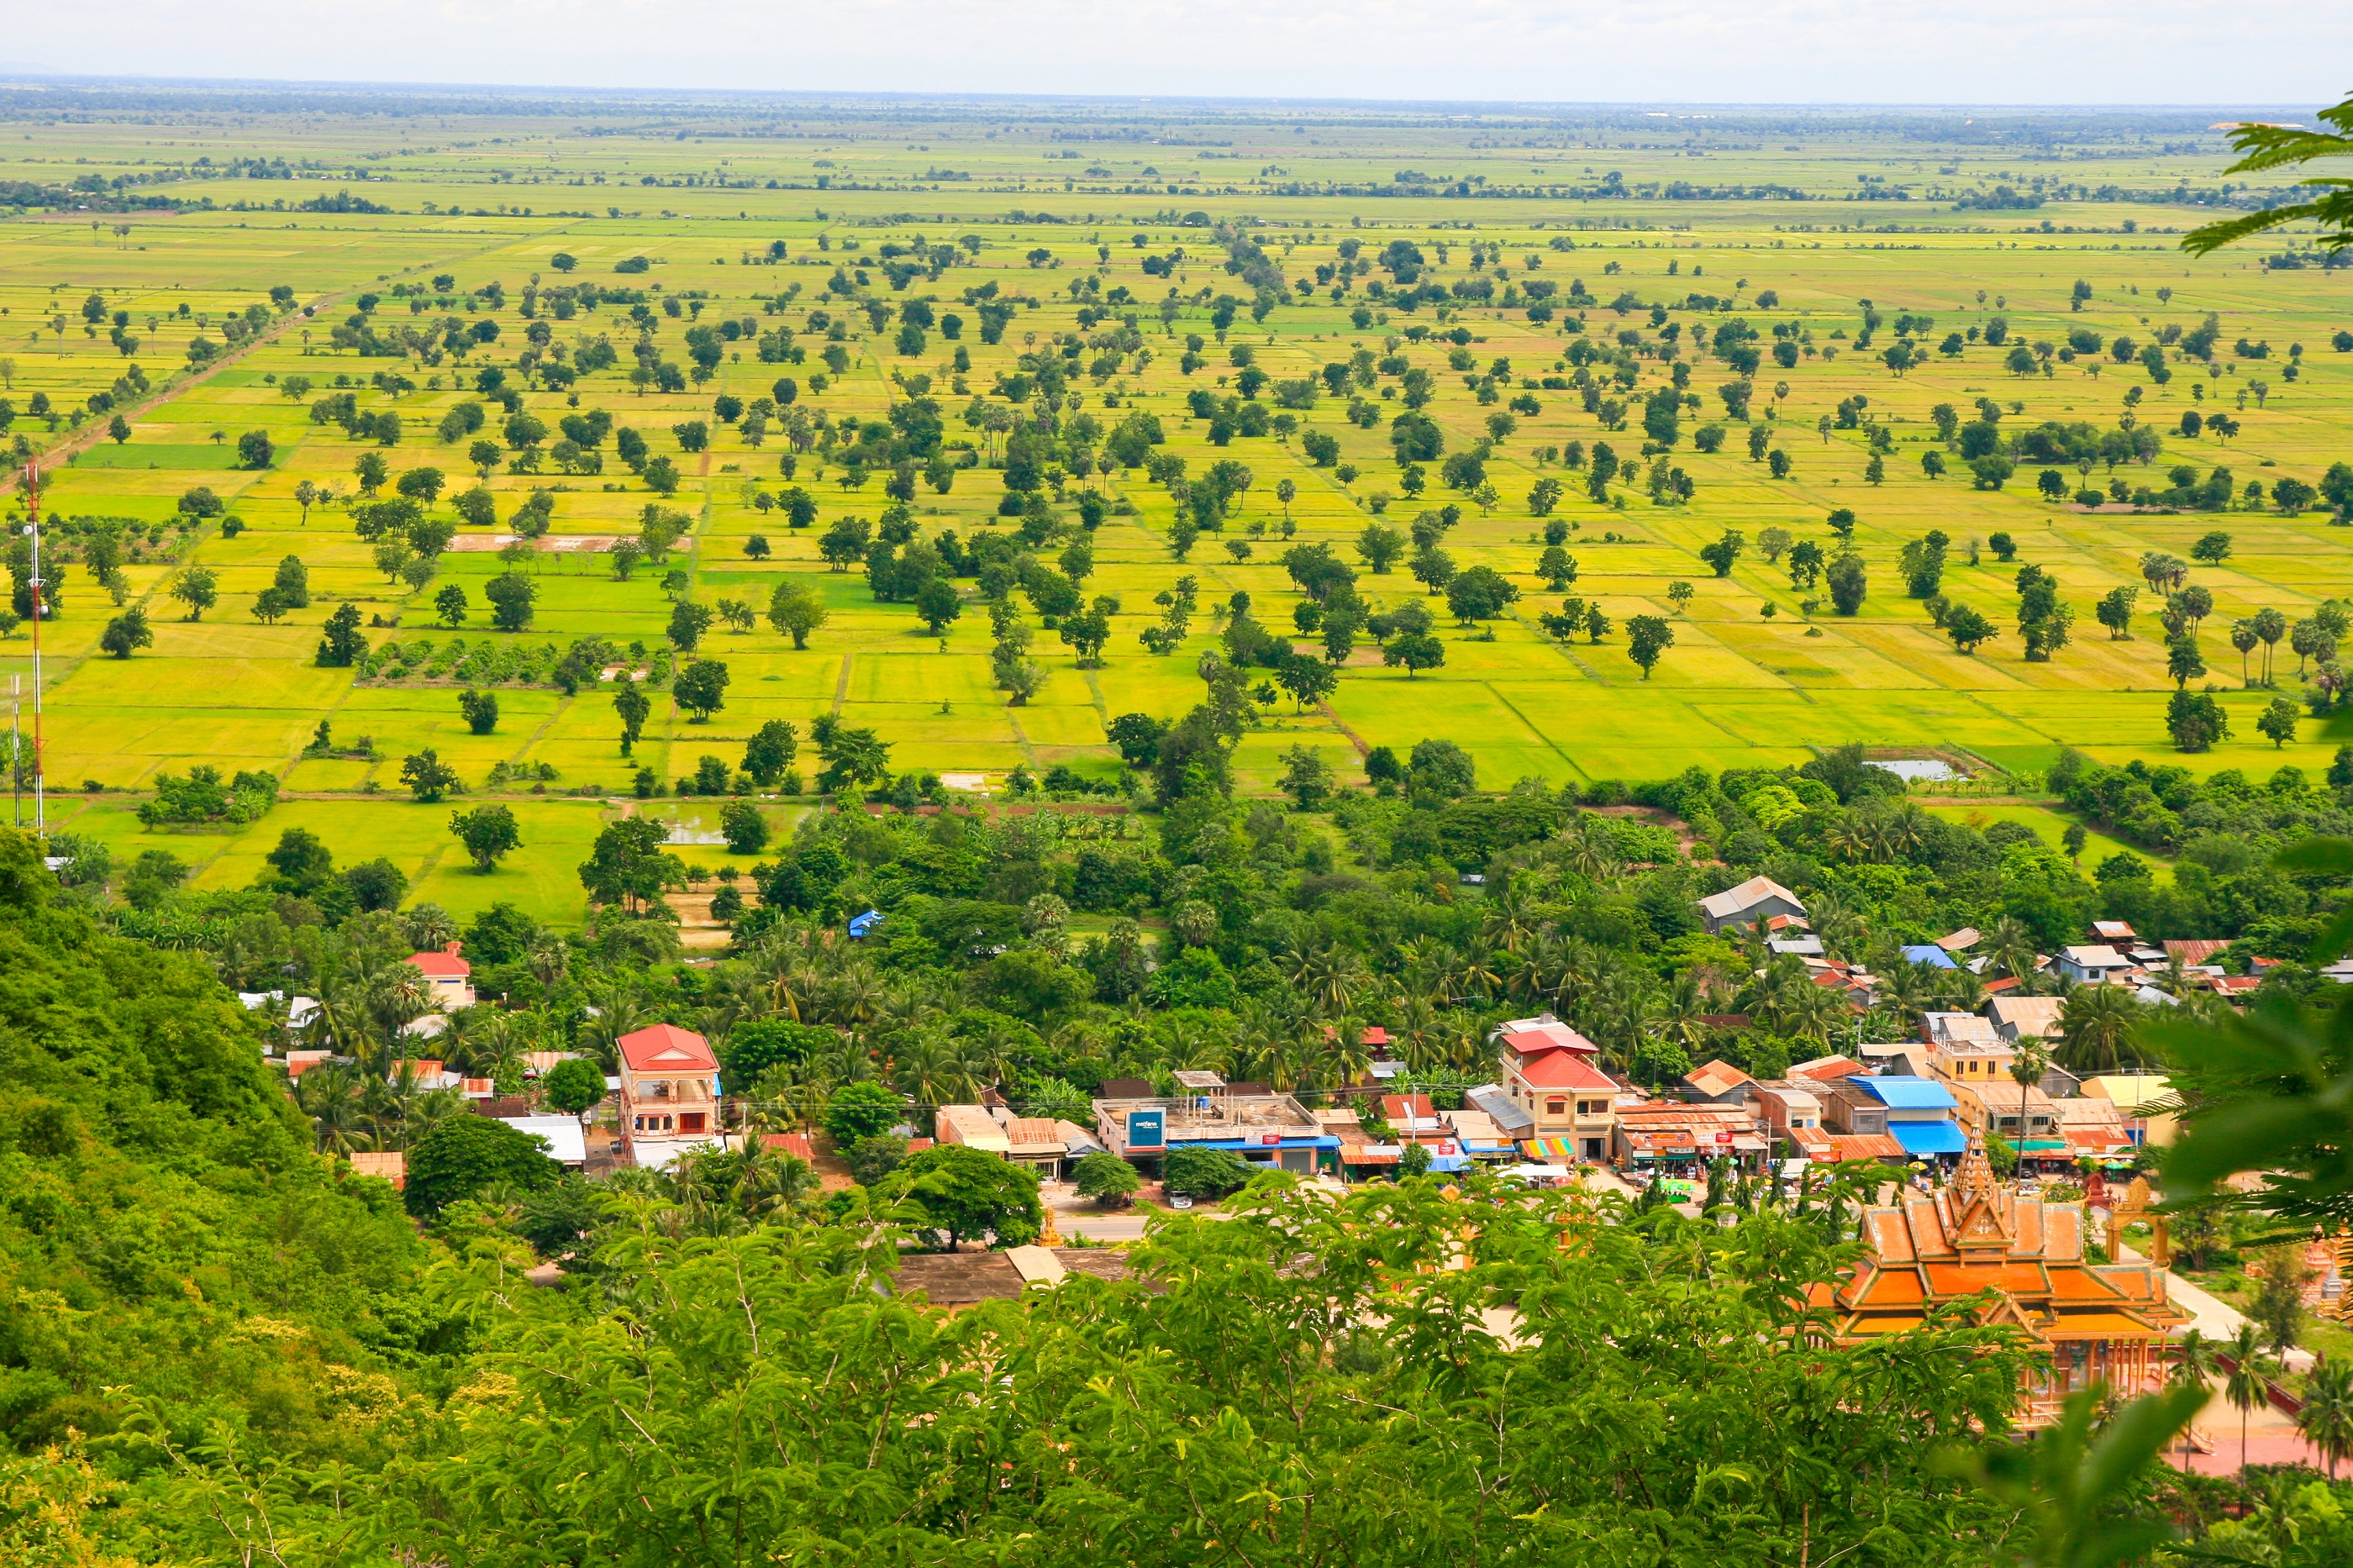 Phonm Sampeau mountain view on Battambang